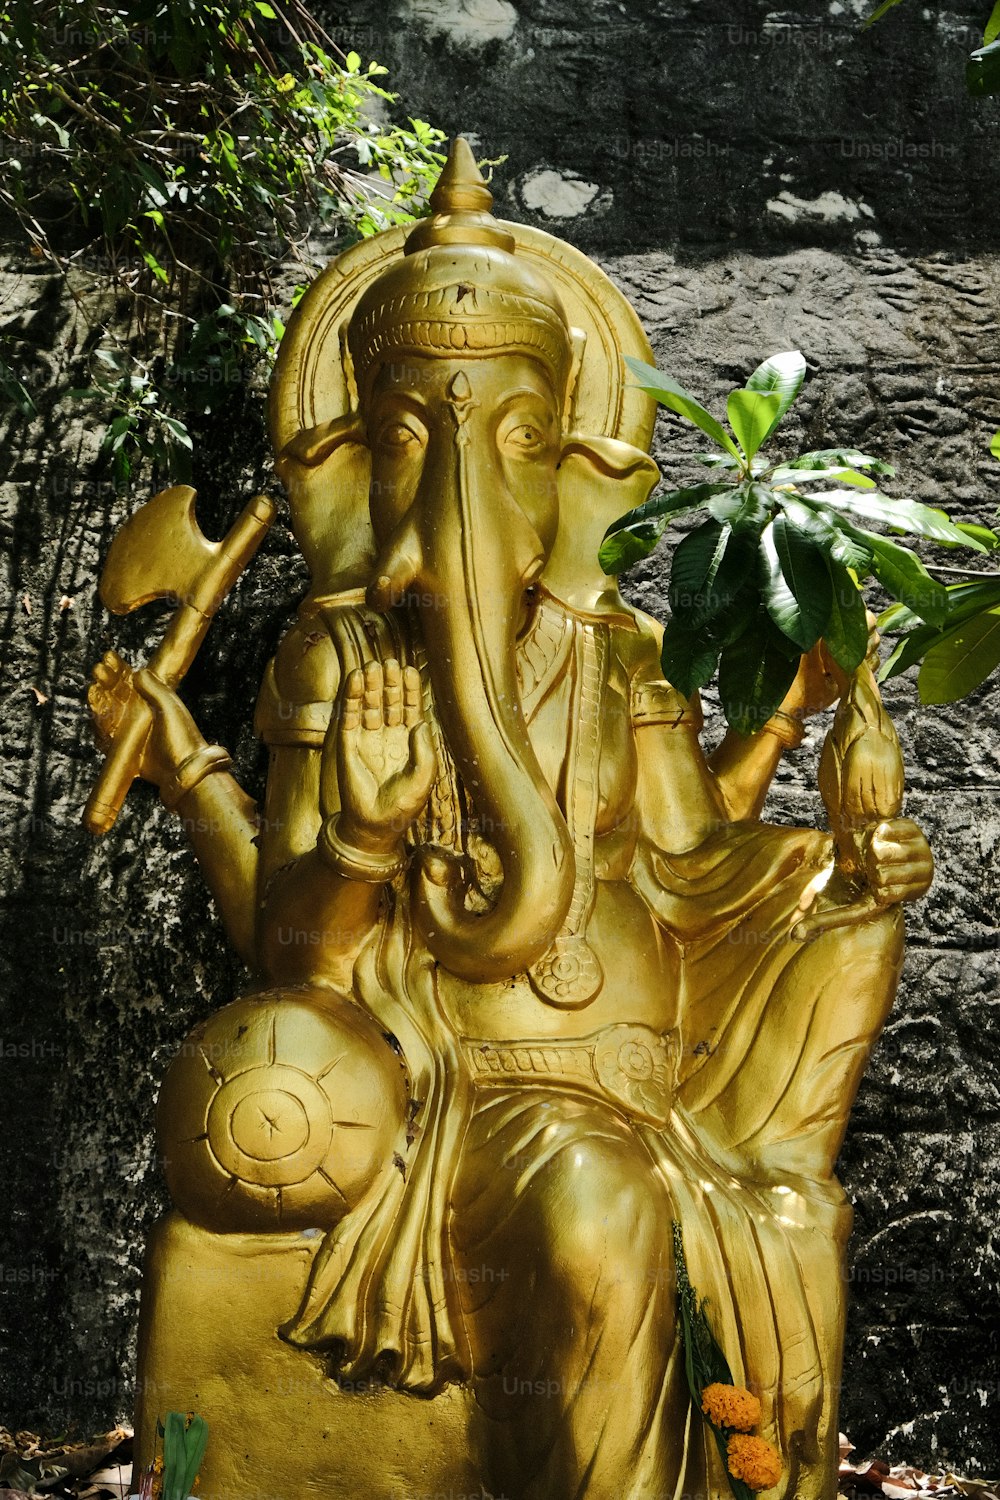 Une statue d’un éléphant avec une plante en pot